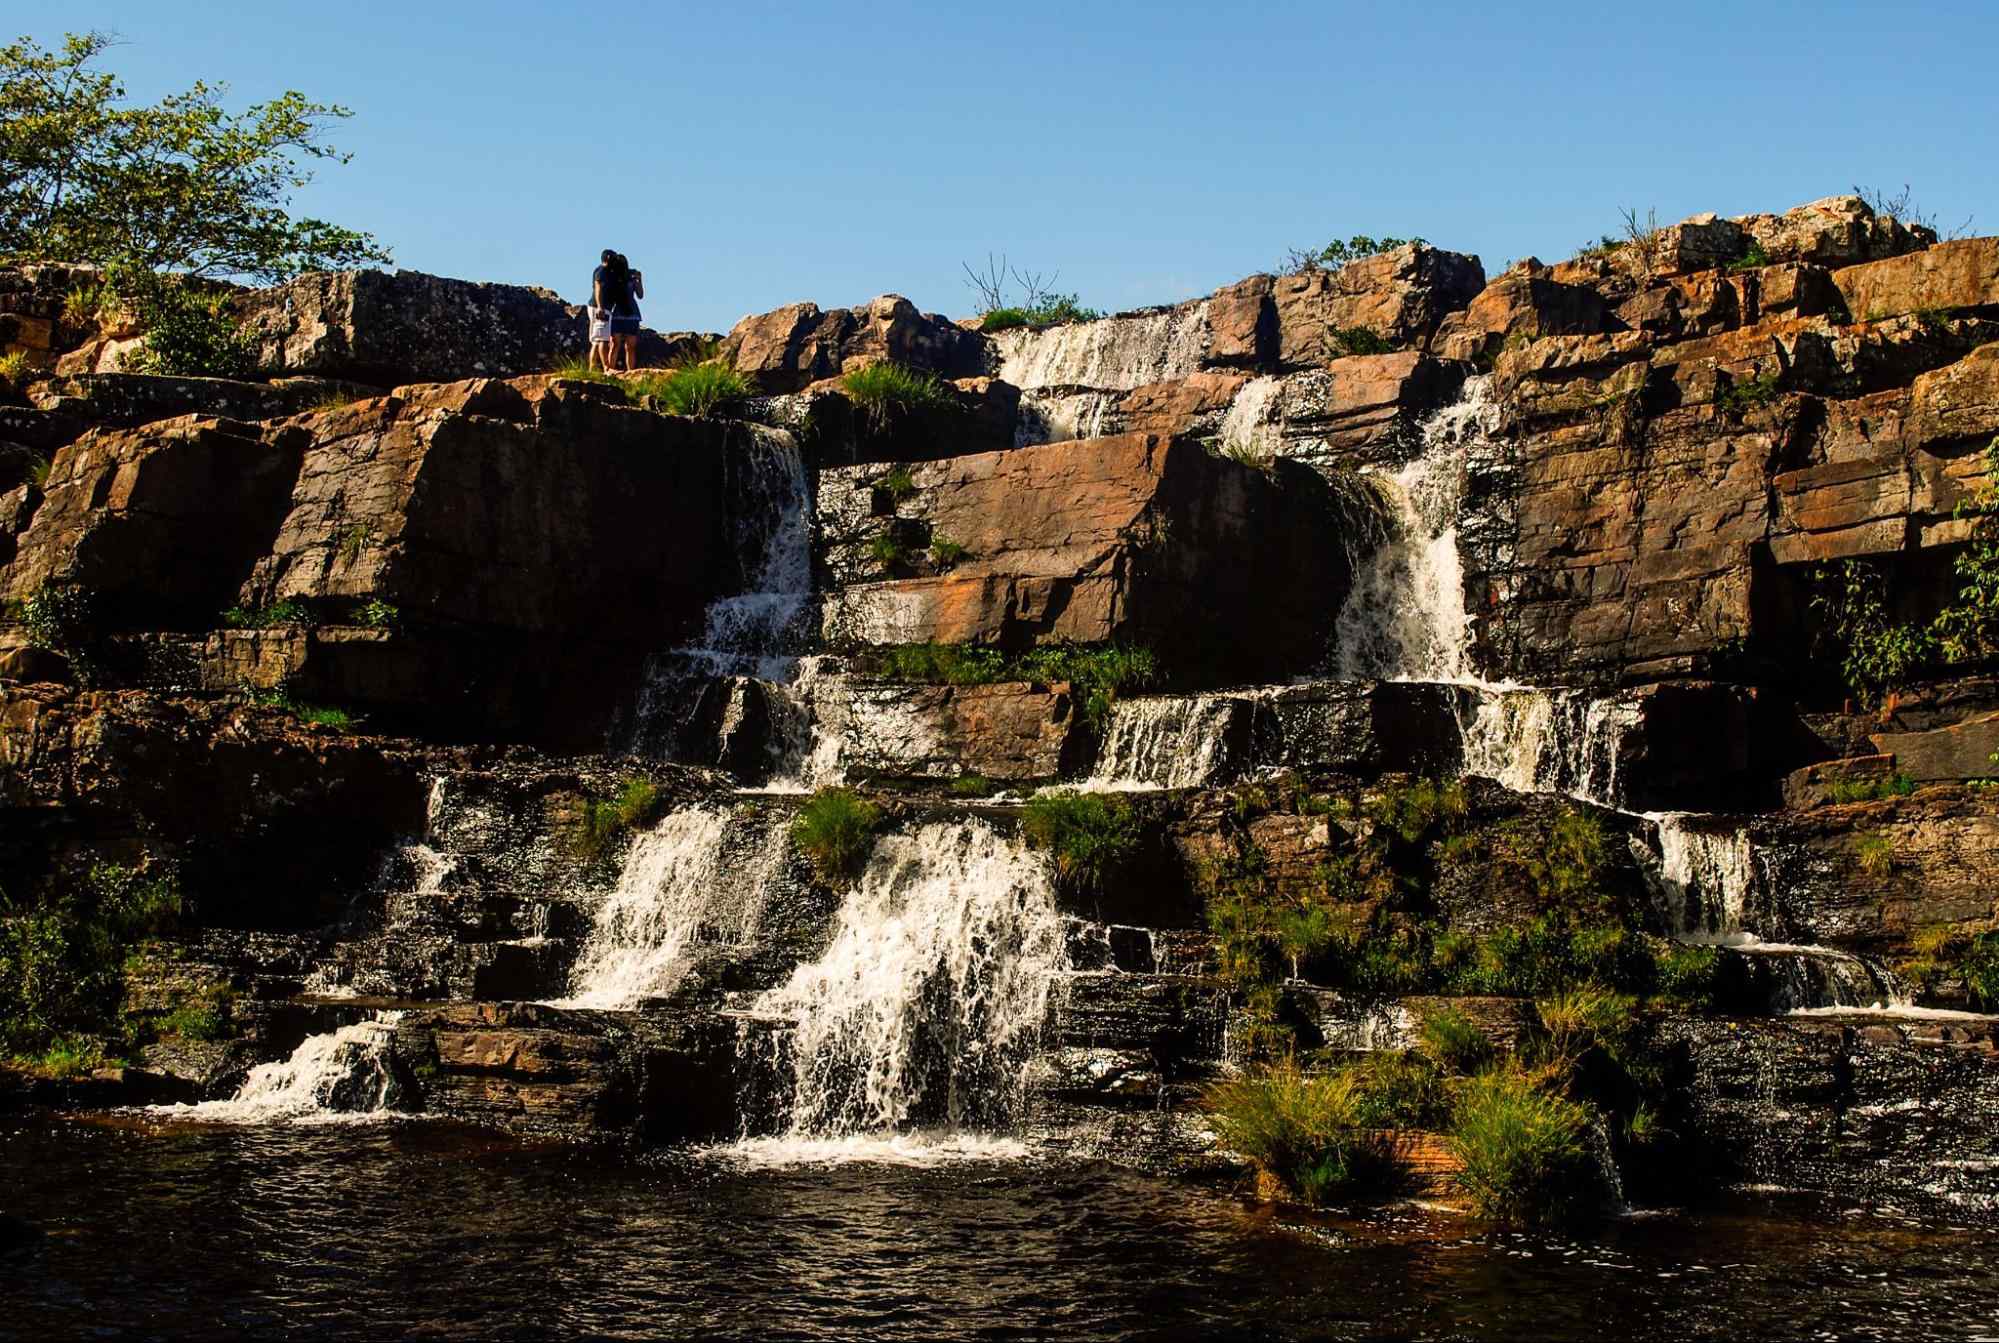 O enorme paredão de pedra por onde despenca a Cachoeira Grande, localizada na Serra do Cipó MG. No alto do cachoeira, um casal posa para uma foto.